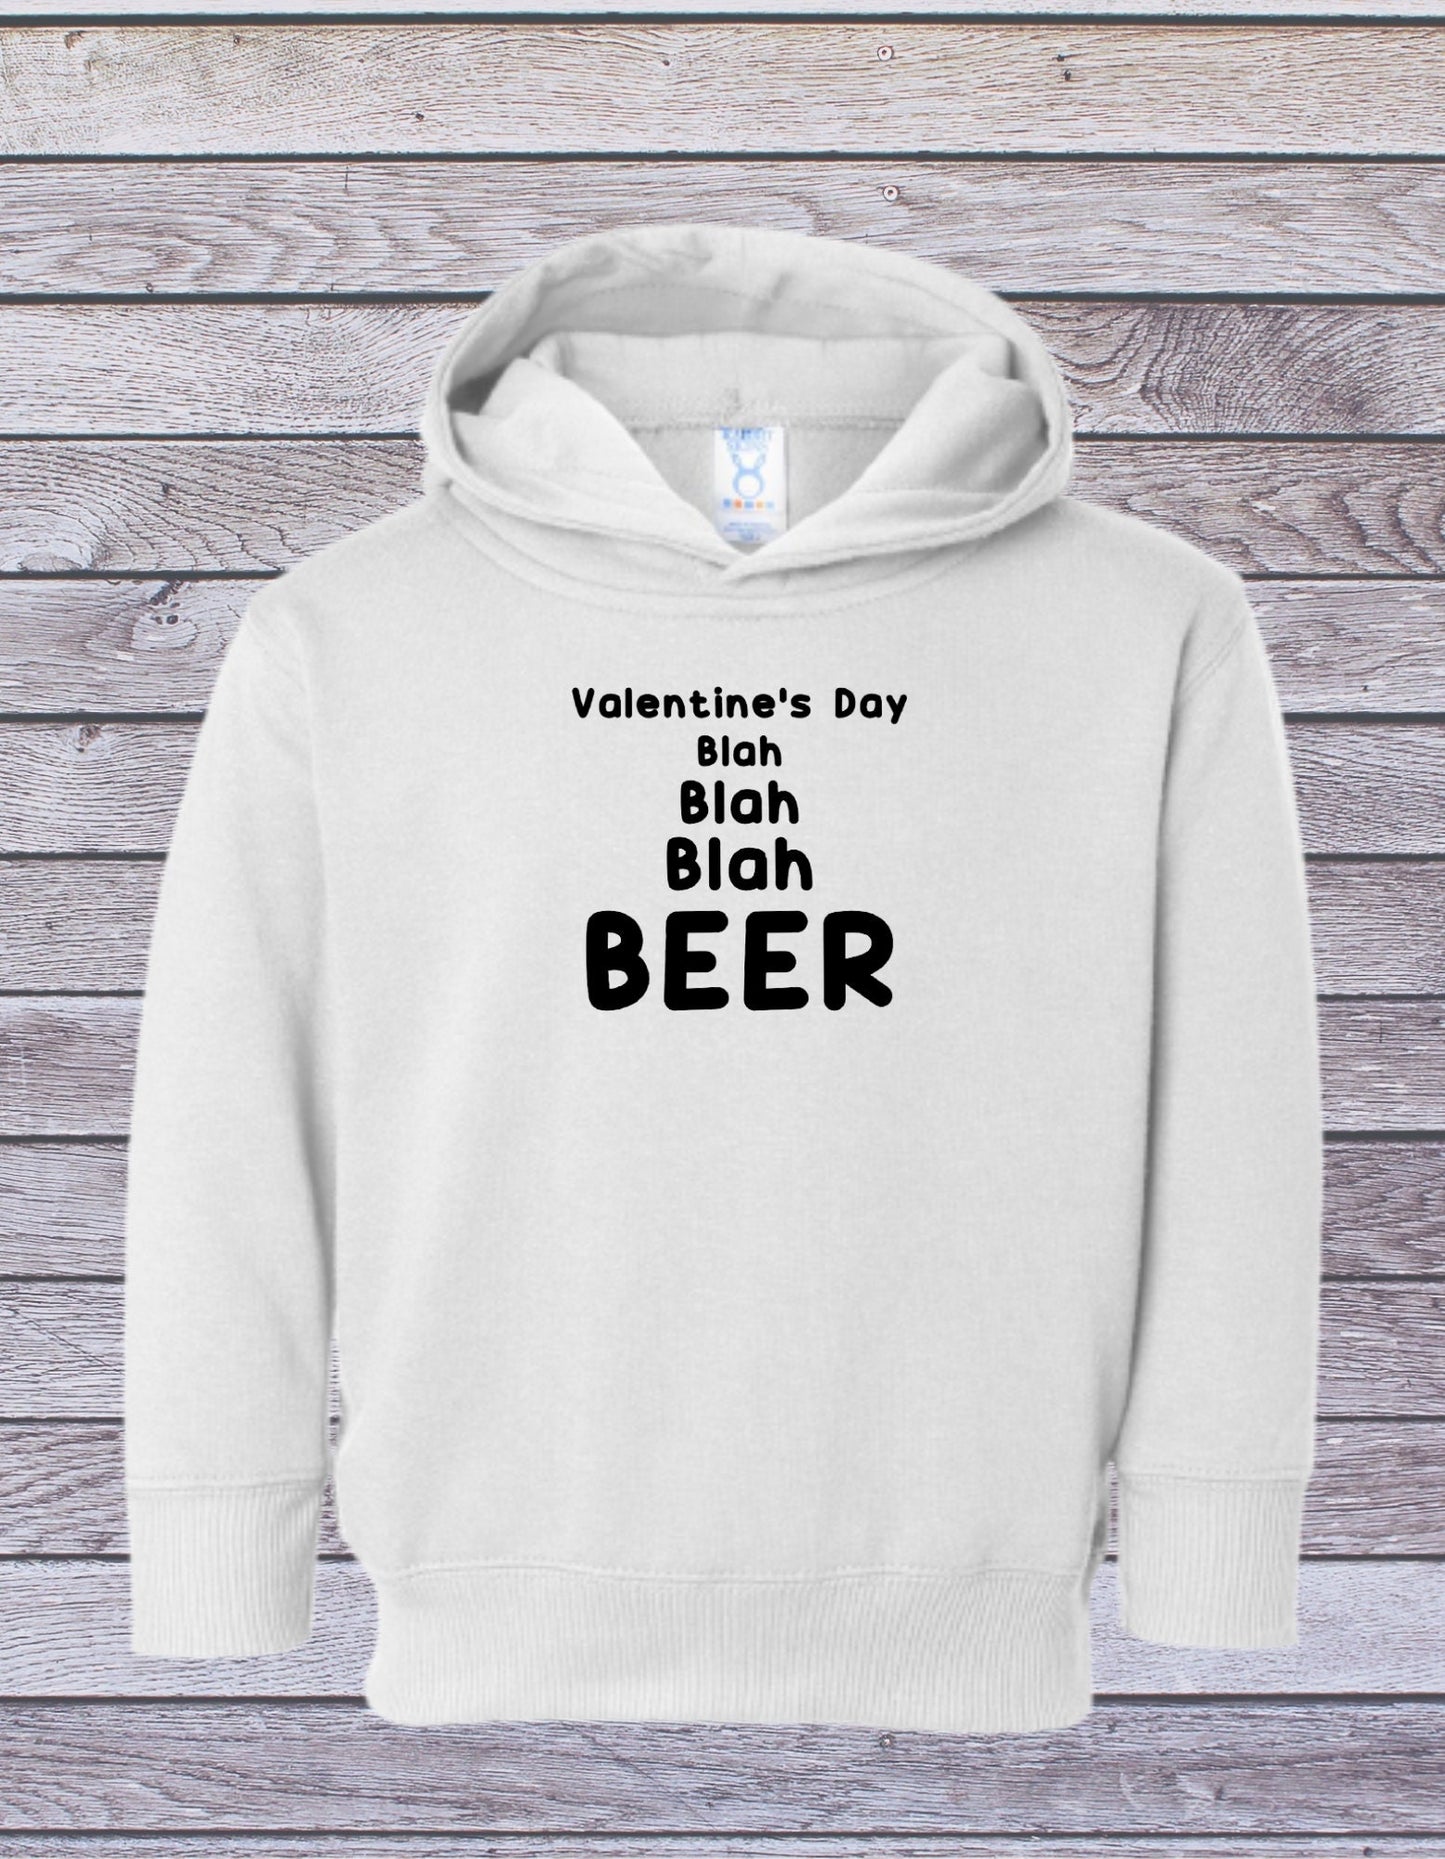 Valentine's Day Blah Blah Blah BEER! Single on Sweetheart day t-shirt hoodie sweatshirt funny Valentine best seller most popular